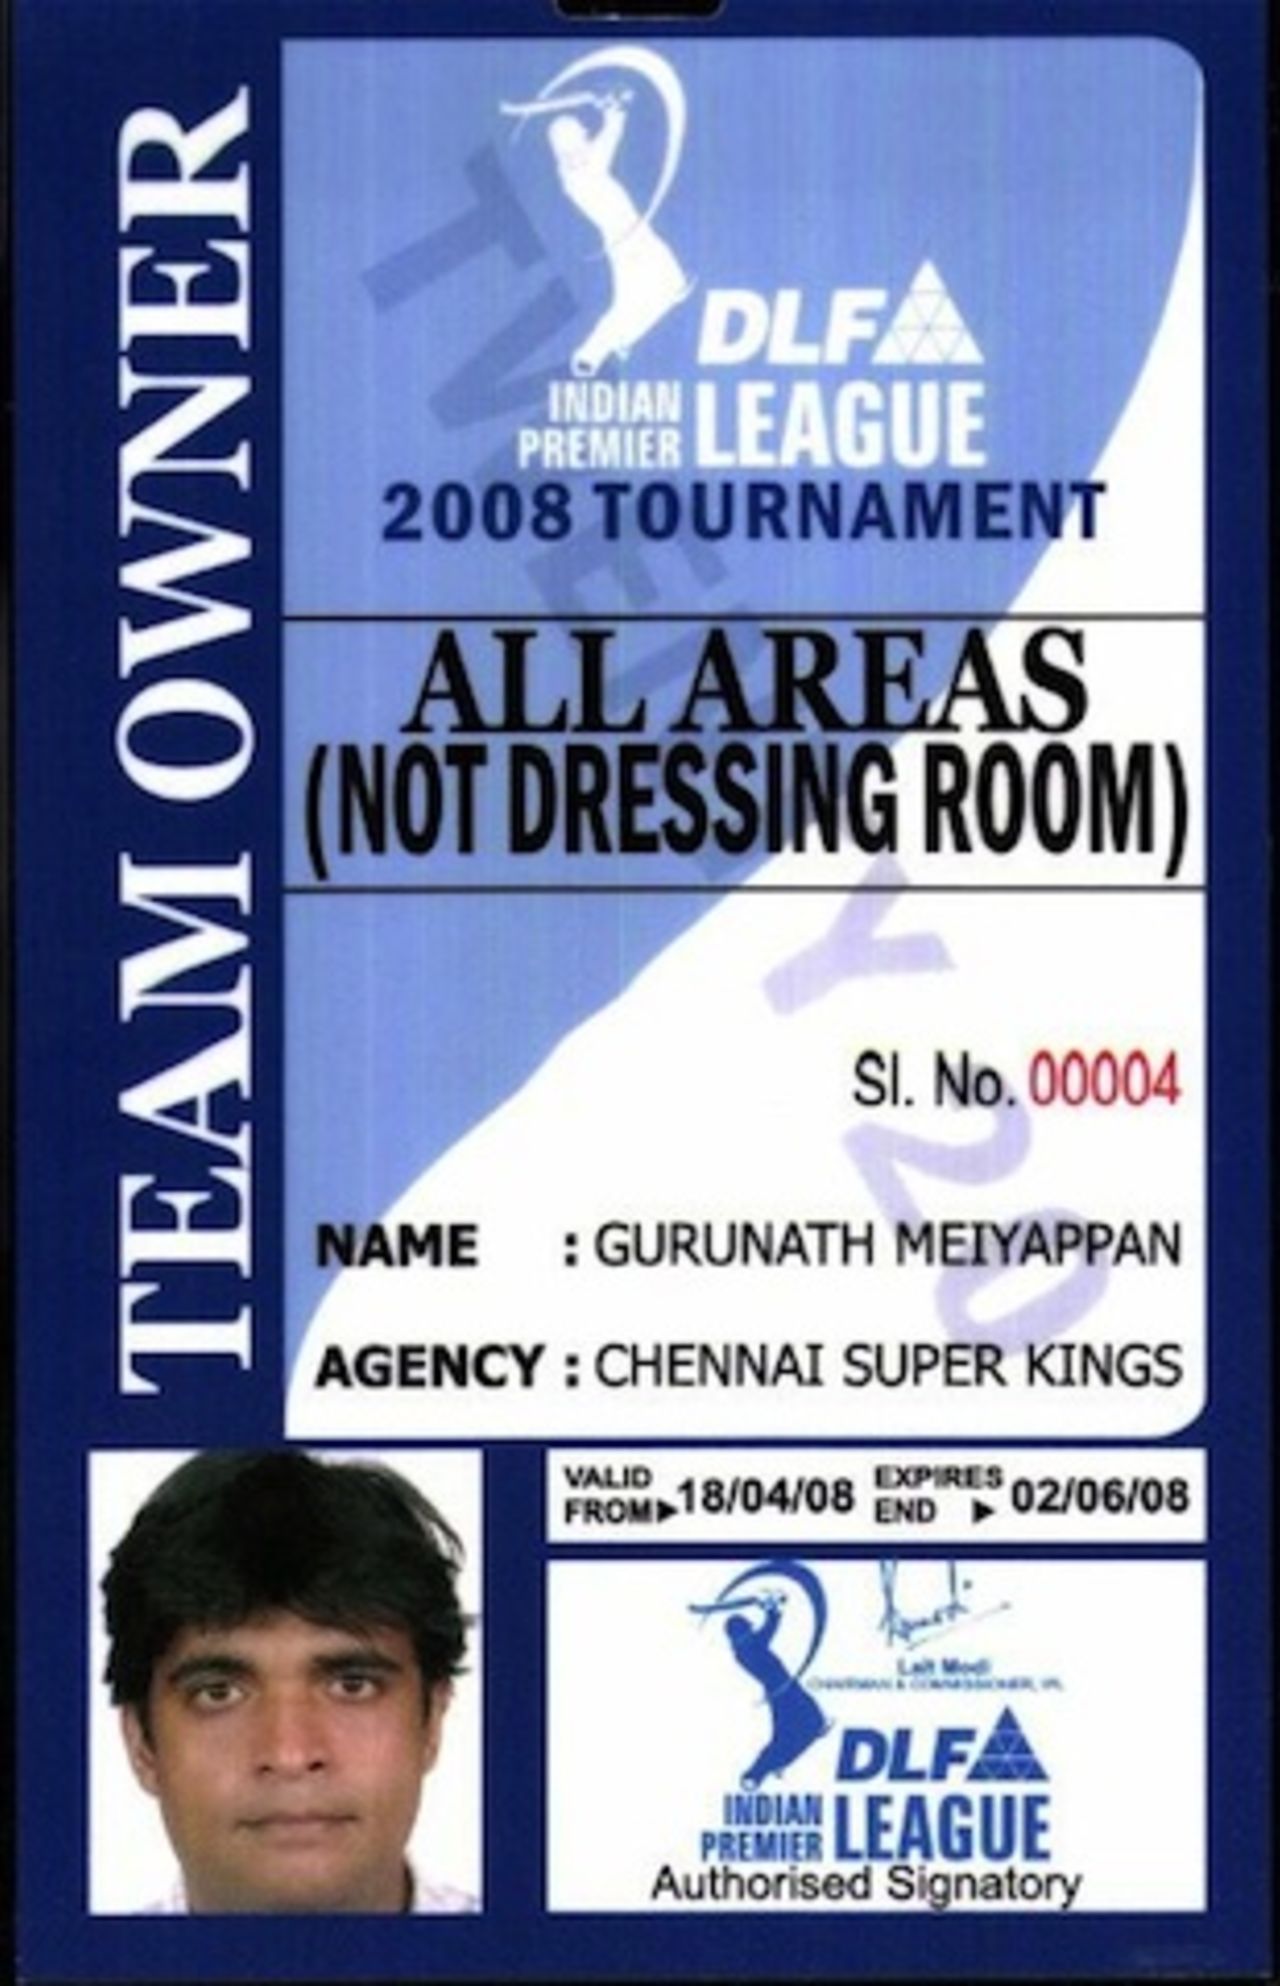 A photograph of Gurunath Meiyappan's accreditation card for IPL 2008